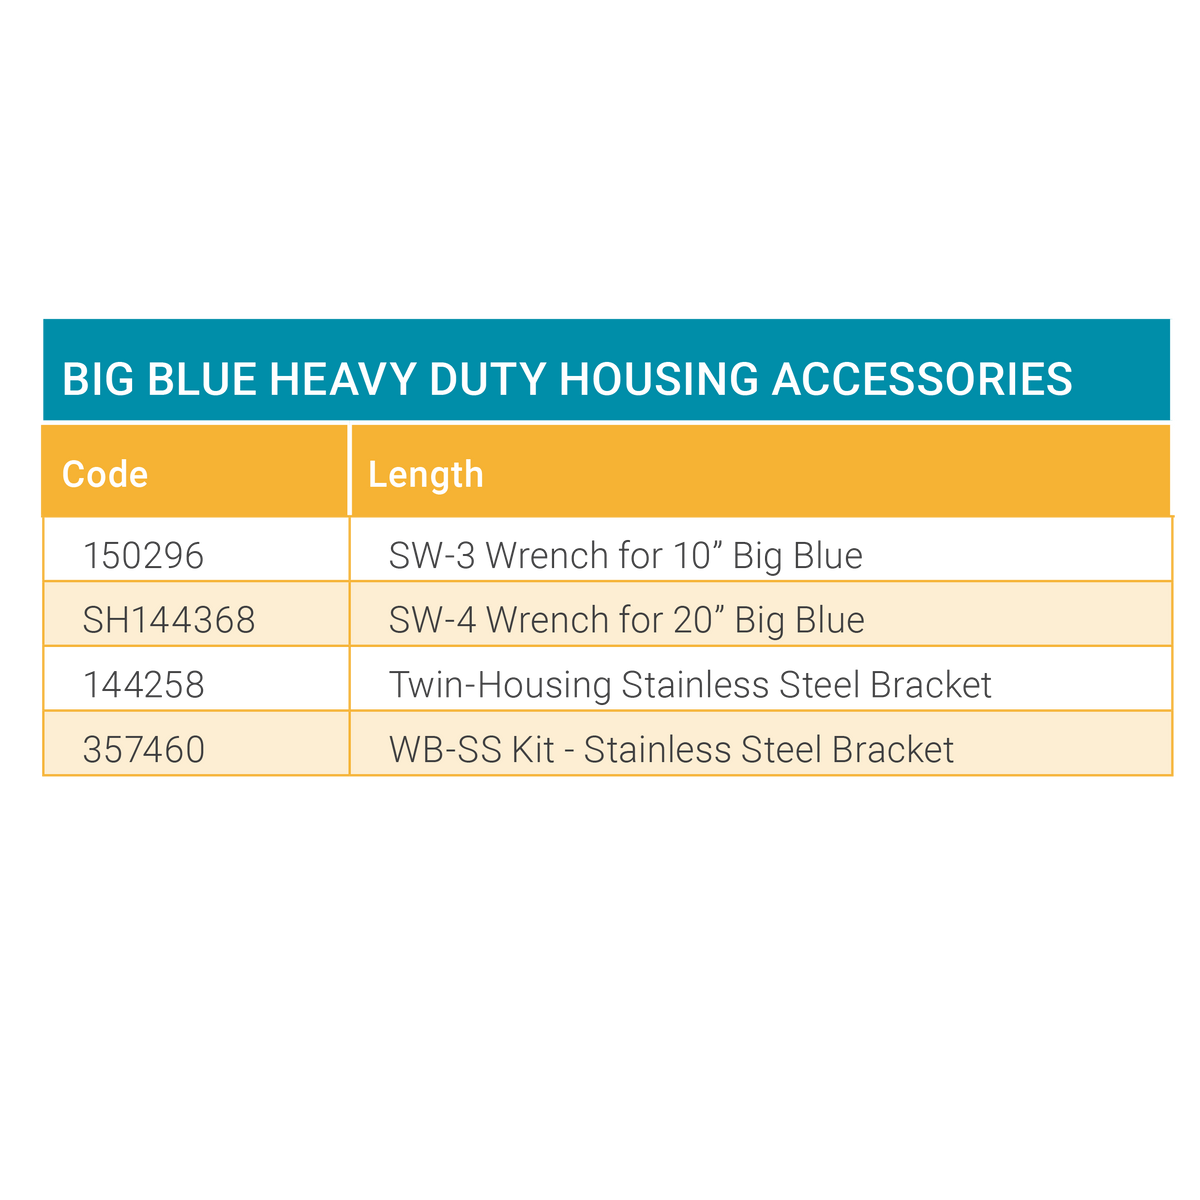 Big Blue Heavy Duty Housings